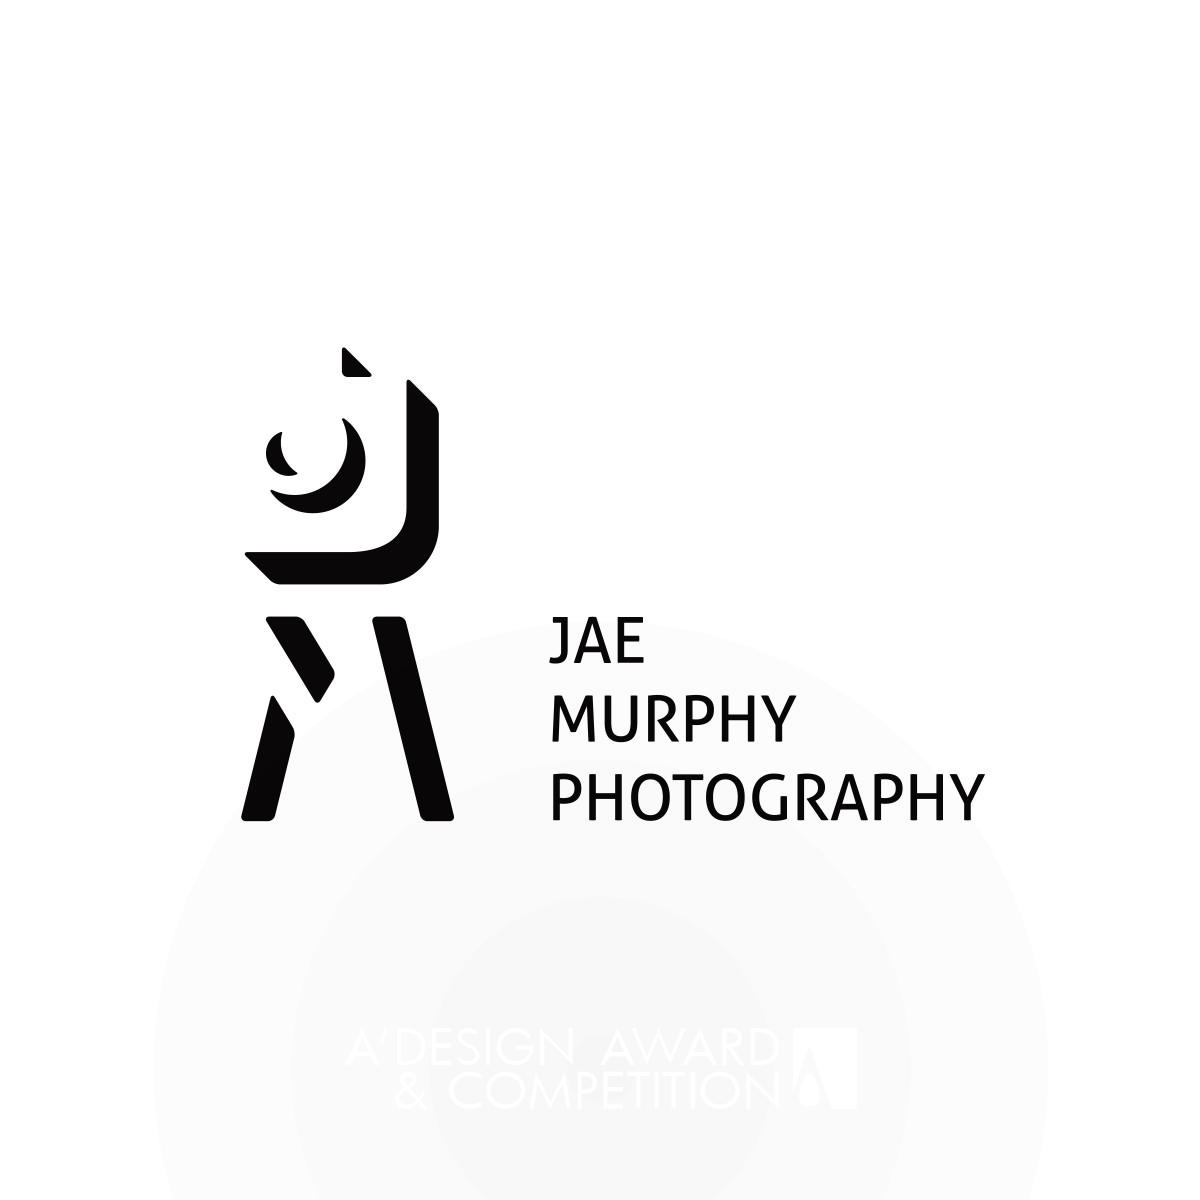 Jae Murphy Corporate Identity by Luka Balic